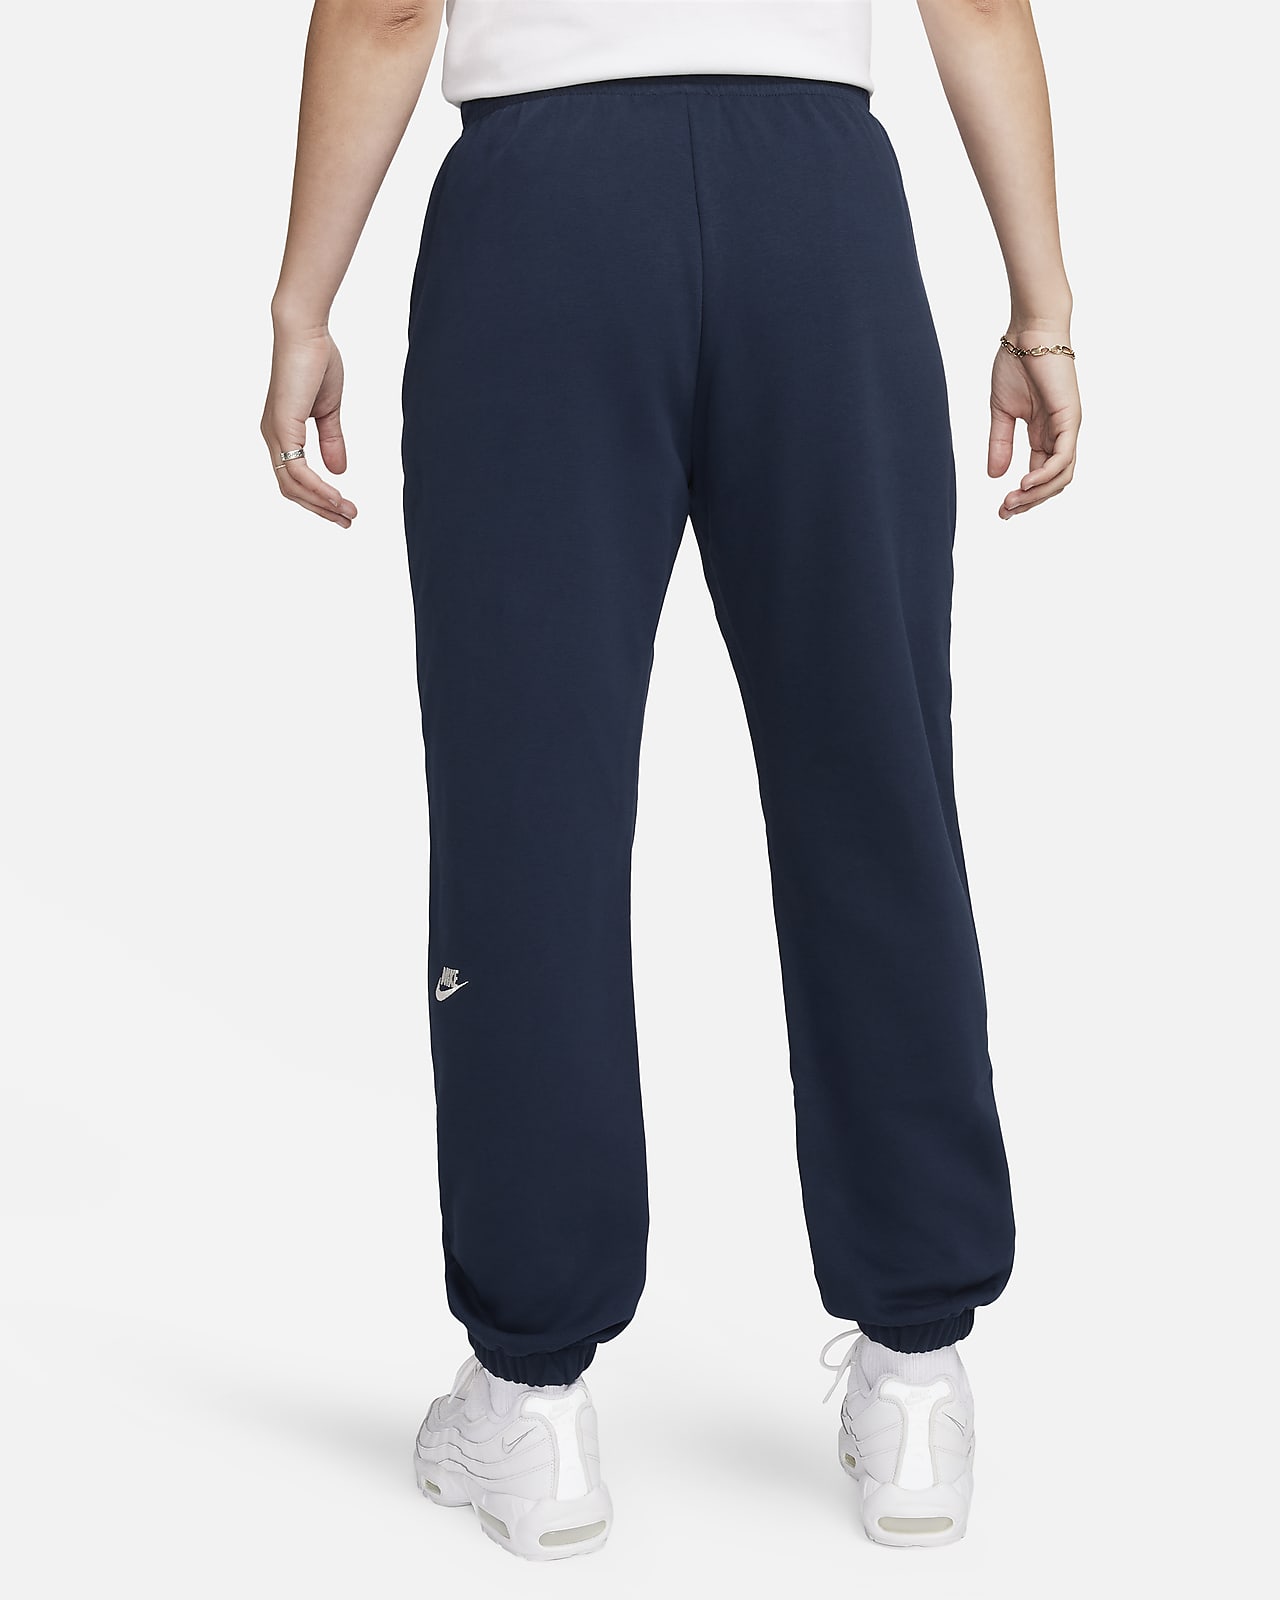 Pants cargo de tejido Woven holgados de tiro alto para mujer Nike Sportswear